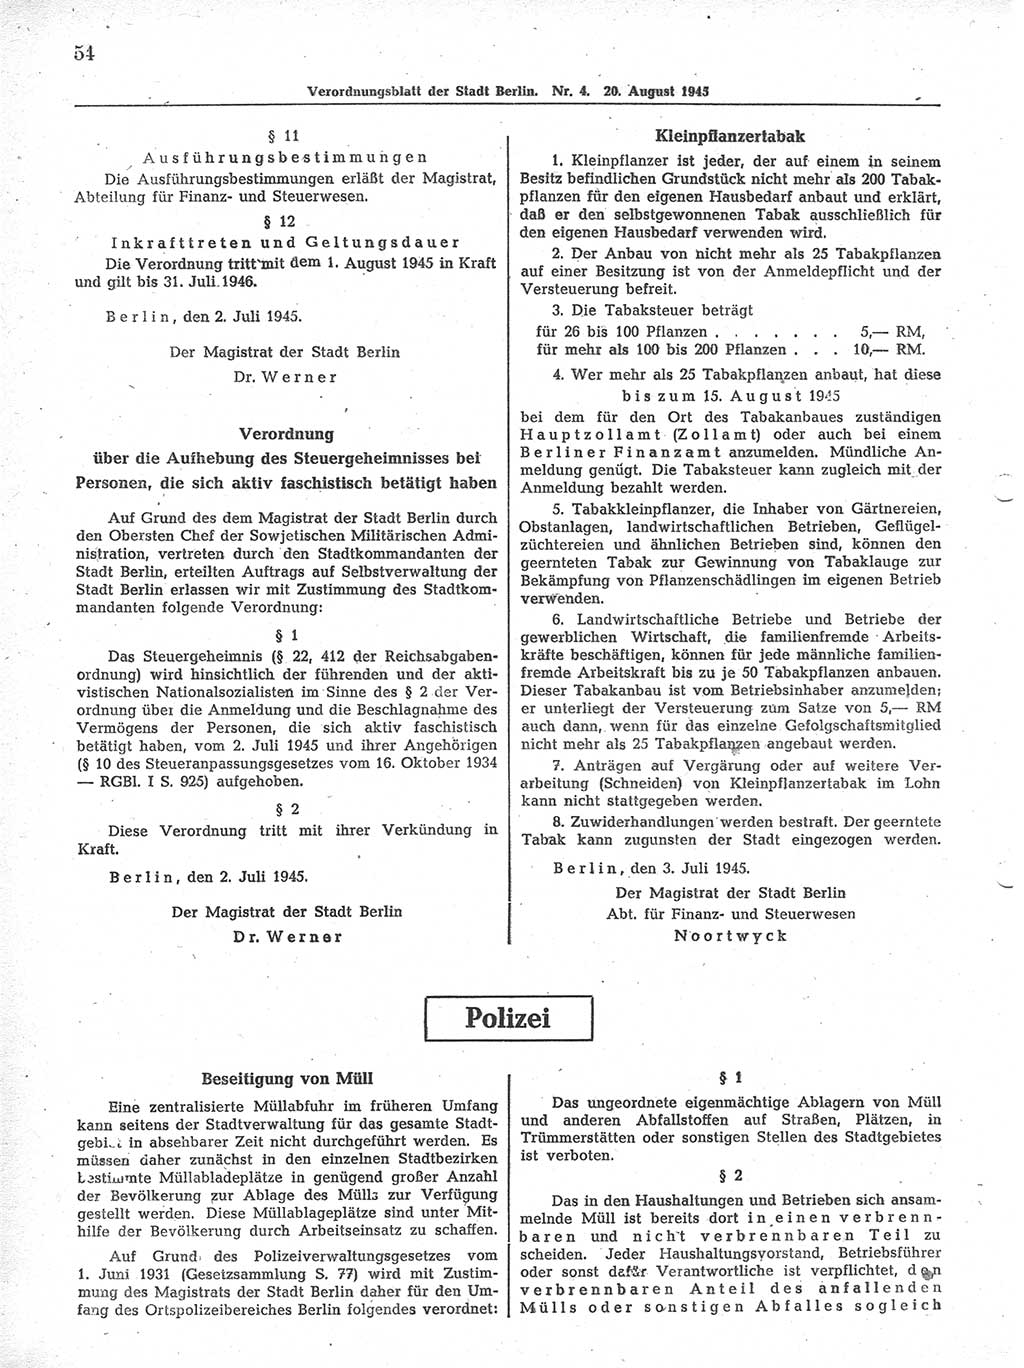 Verordnungsblatt (VOBl.) der Stadt Berlin 1945, Seite 54 (VOBl. Bln. 1945, S. 54)